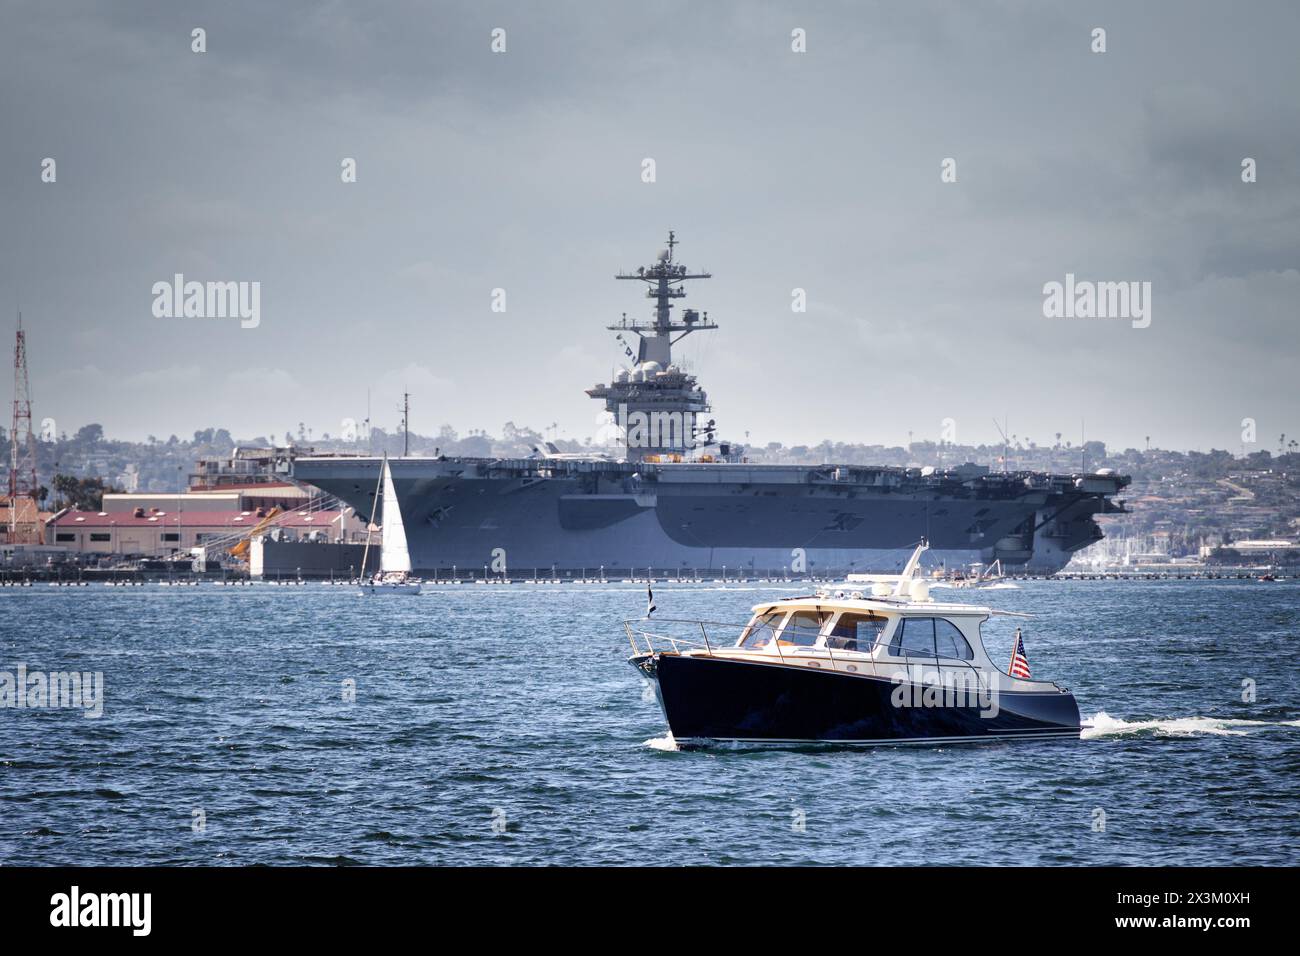 Una barca sull'acqua, con una portaerei della US Navy sullo sfondo, nella baia di San Diego al largo della costa di Coronado, California. Foto Stock